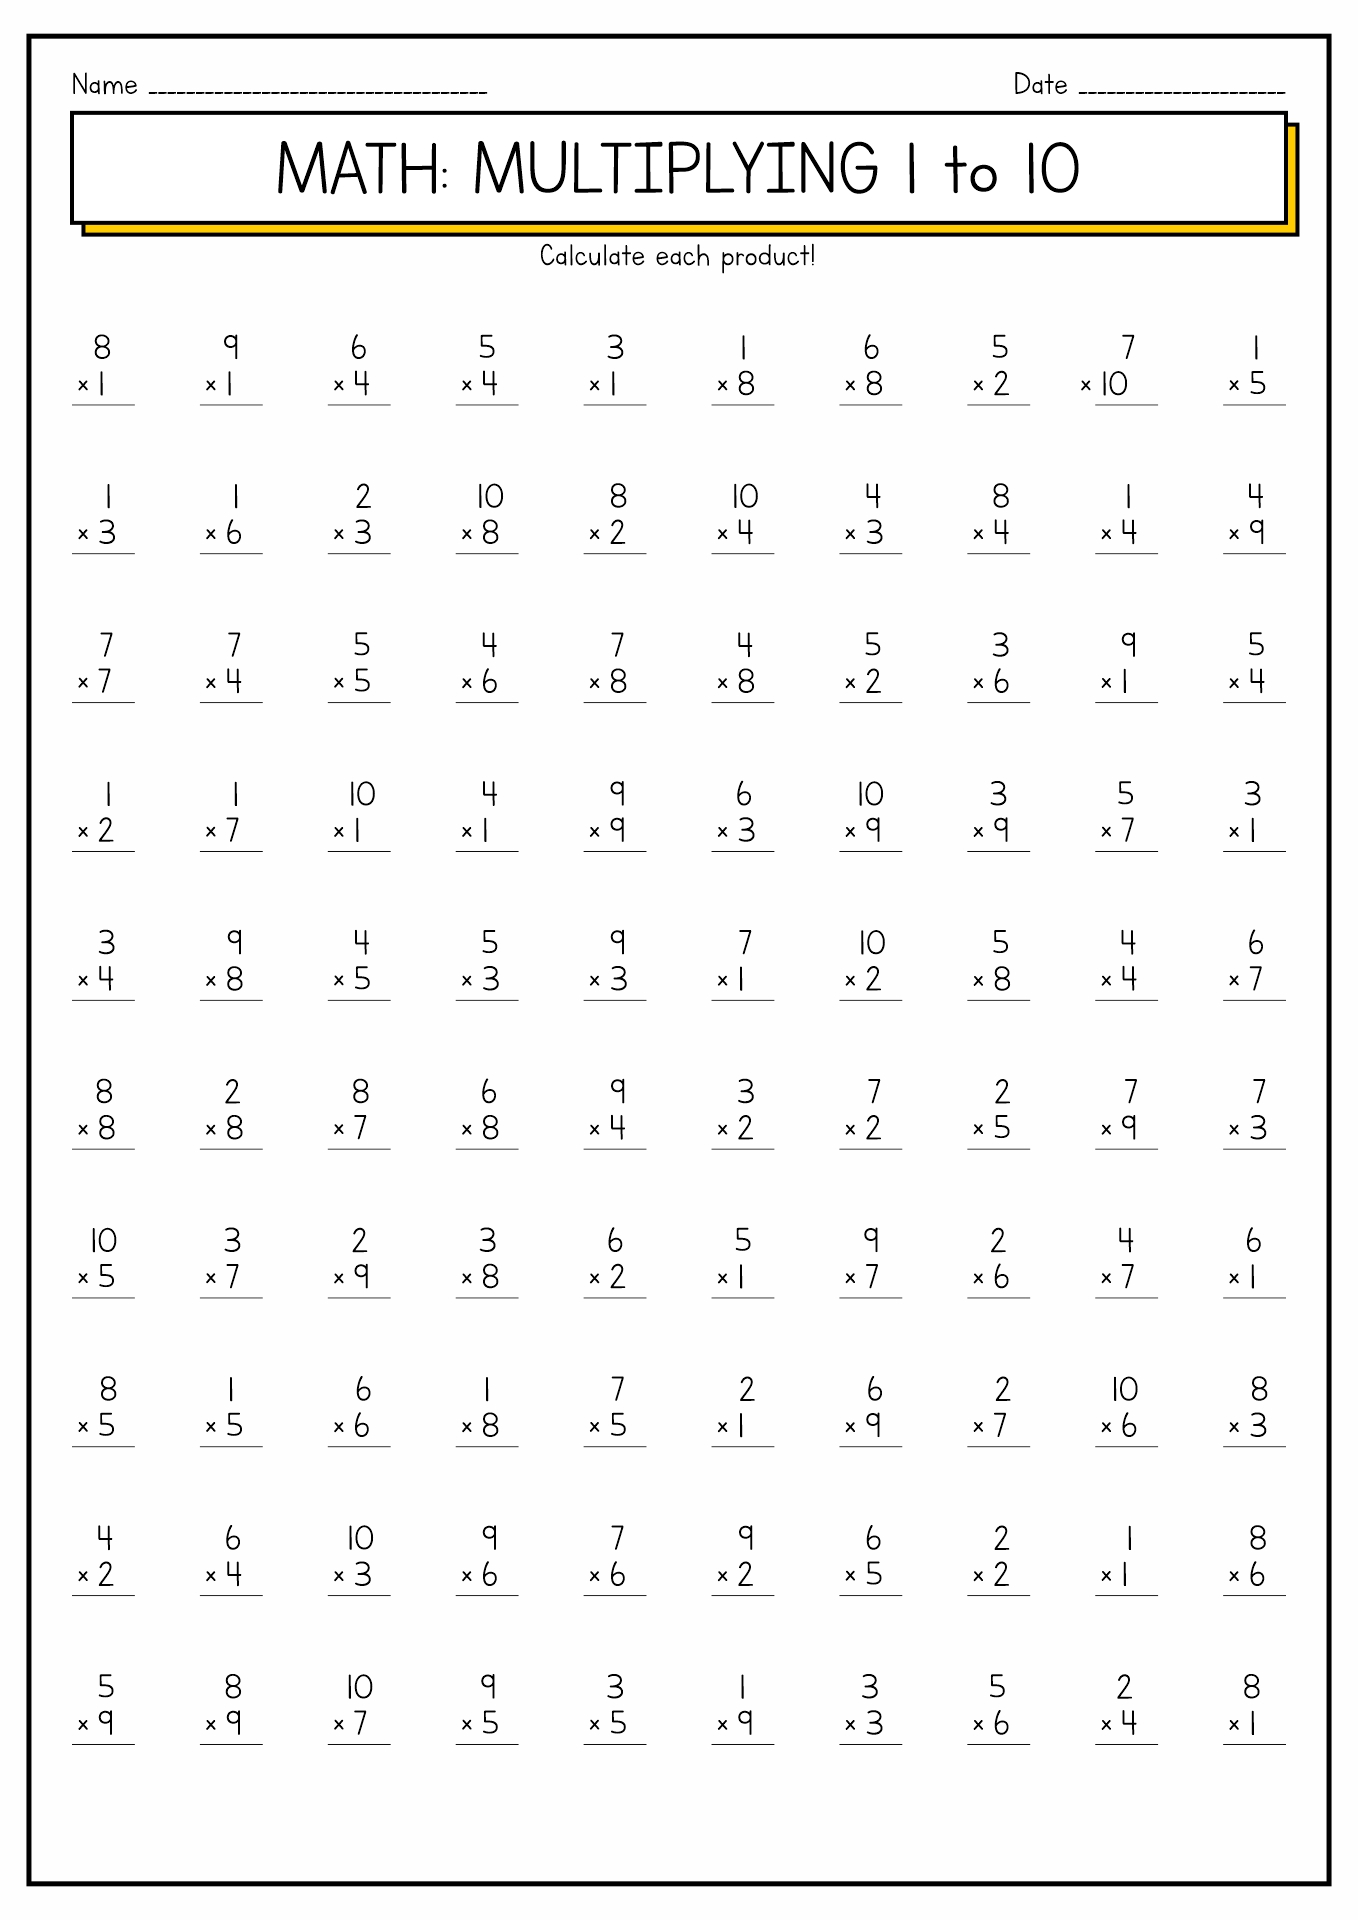 10 Best Images of Multiplication Worksheets 1 12 - Multiplication